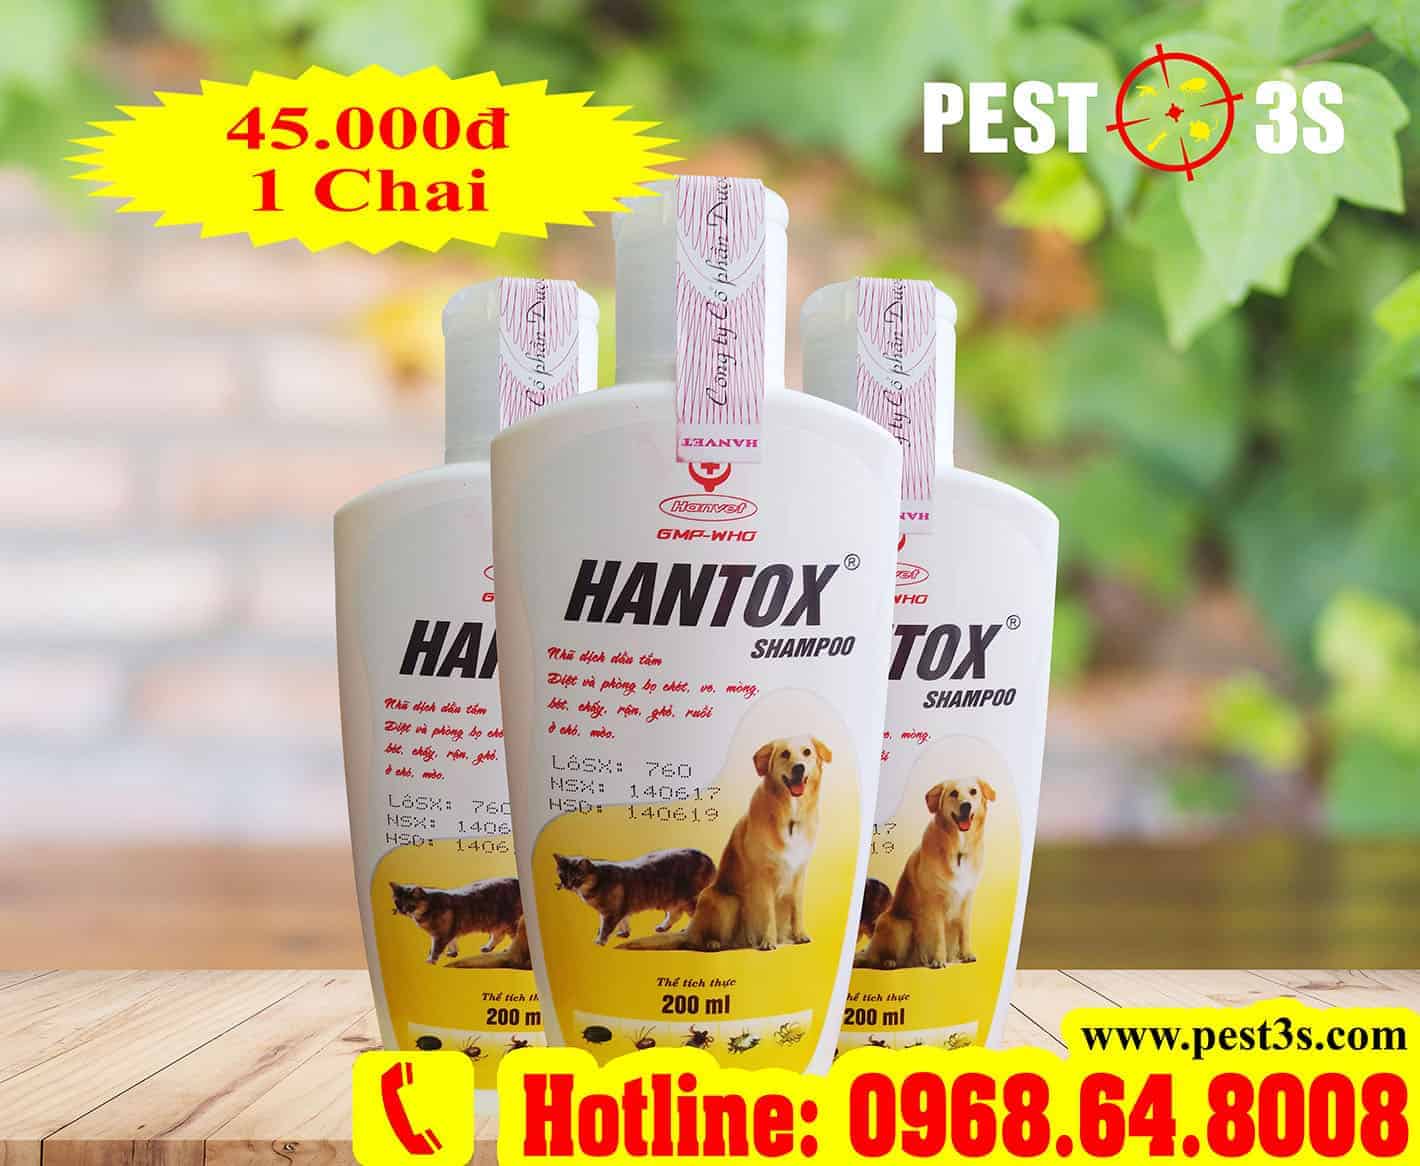 Hantox Shampoo (200ml) Chai Vàng - Diệt và phòng bọ chét, bét, ve, chấy, rận, ghẻ ở chó, mèo, thú nuôi.